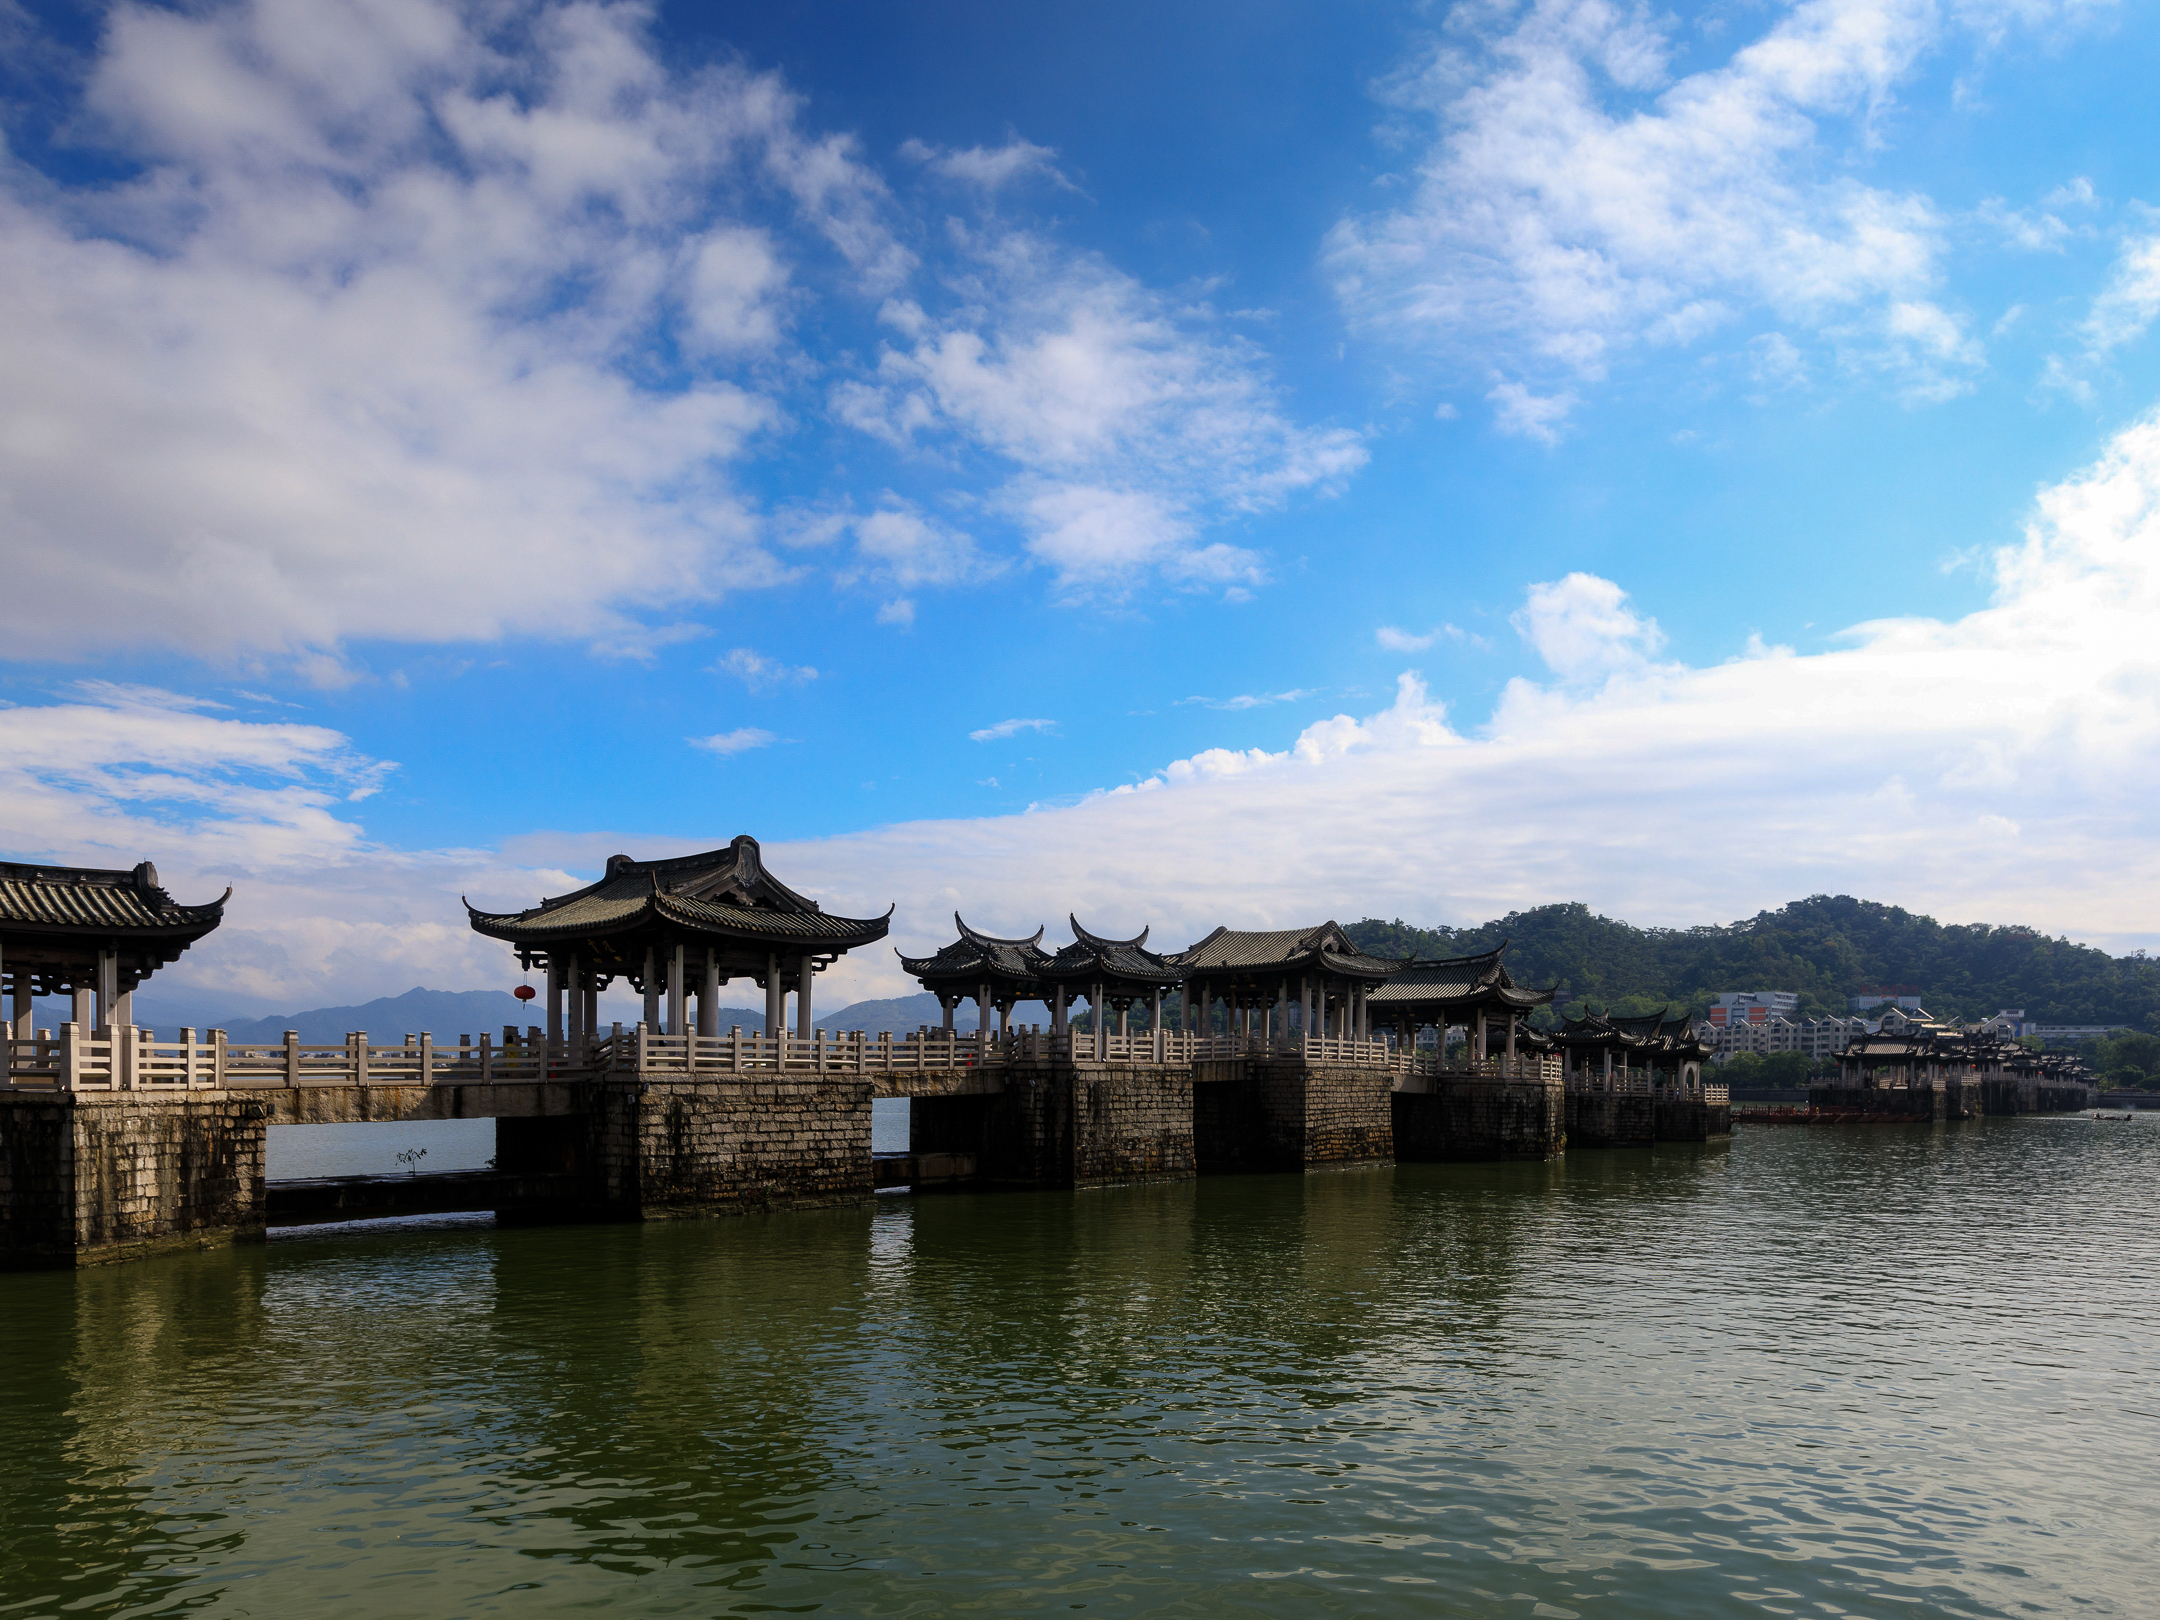 中国结构最独特的古桥，中间由木船链接，如今成为国内知名景区